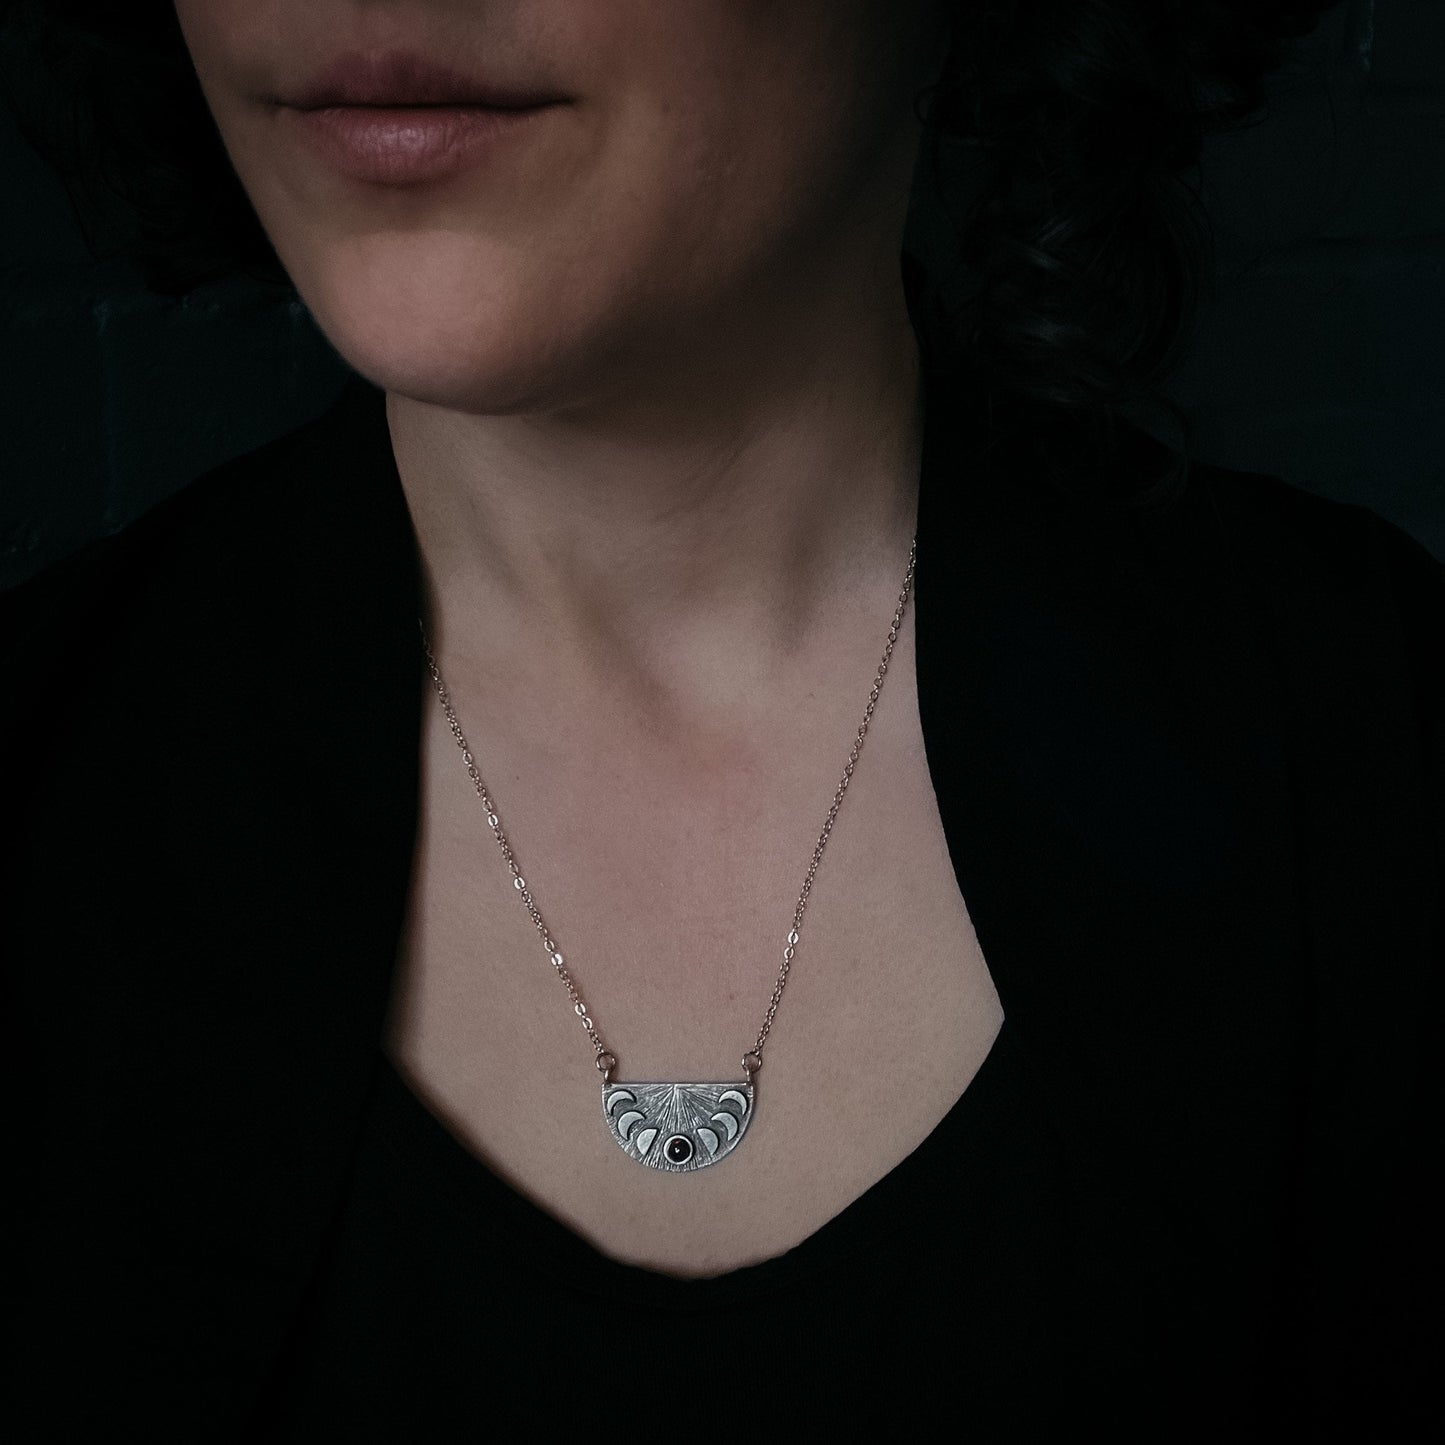 Lunar Eclipse Pendant Necklace with Black Opal